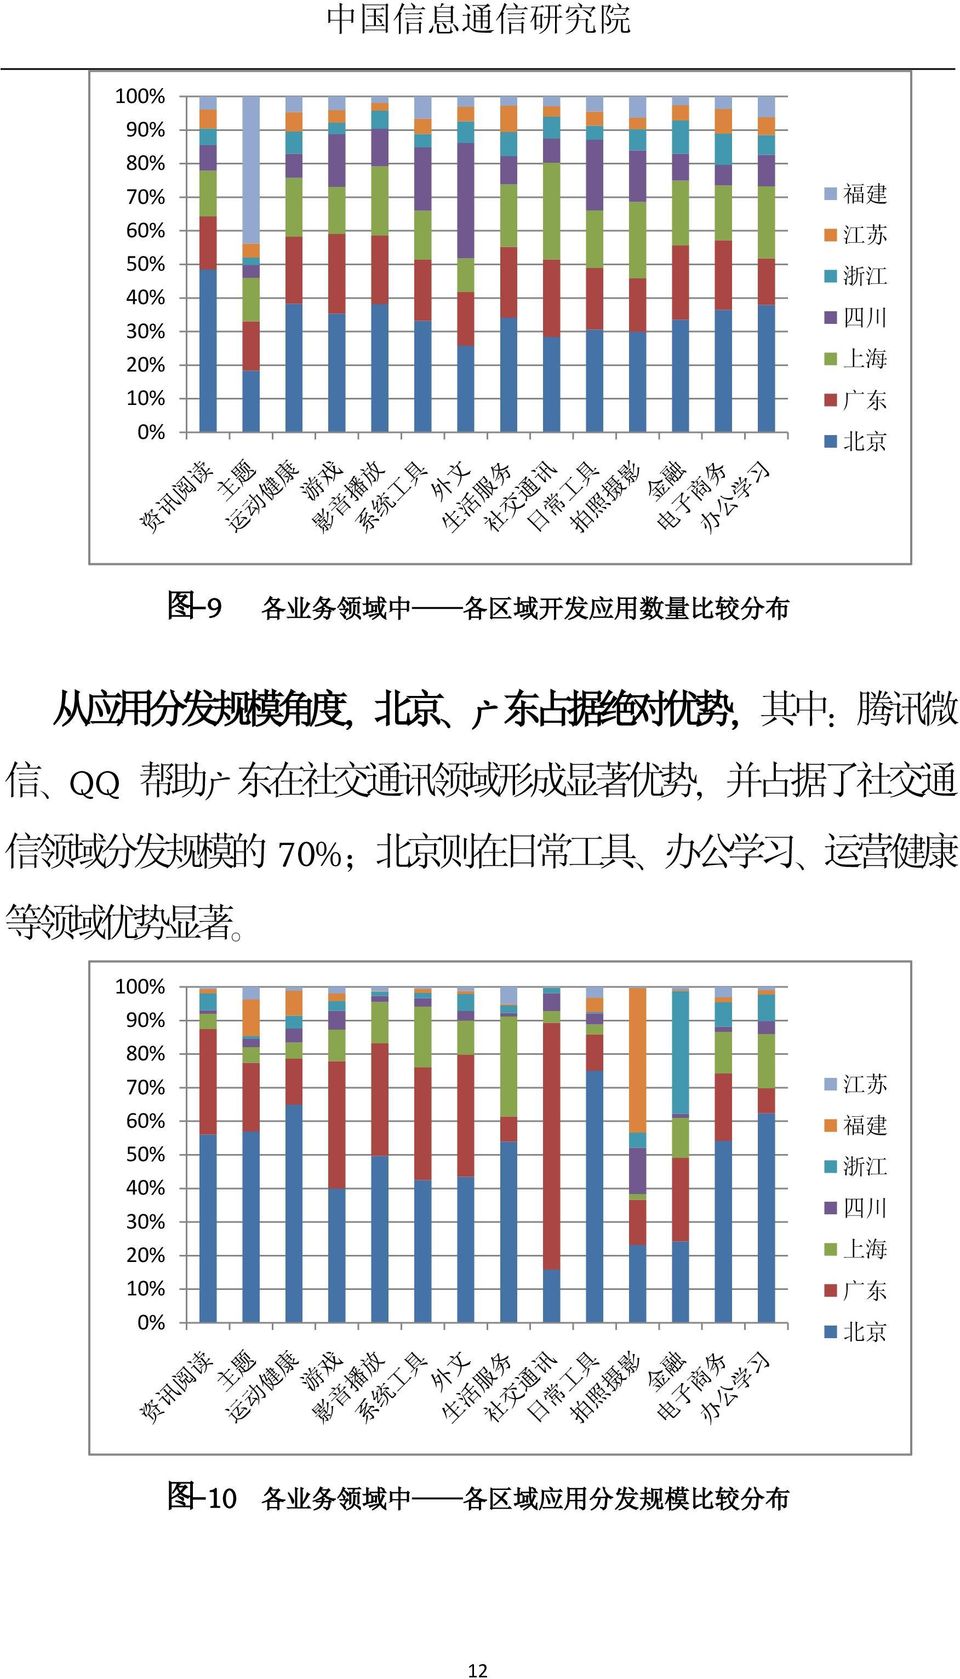 优 势, 并 占 据 了 社 交 通 信 领 域 分 发 规 模 的 70% 等 领 域 优 势 显 著 北 京 则 在 日 常 工 具 办 公 学 习 运 营 健 康 ; 100% 90% 80%